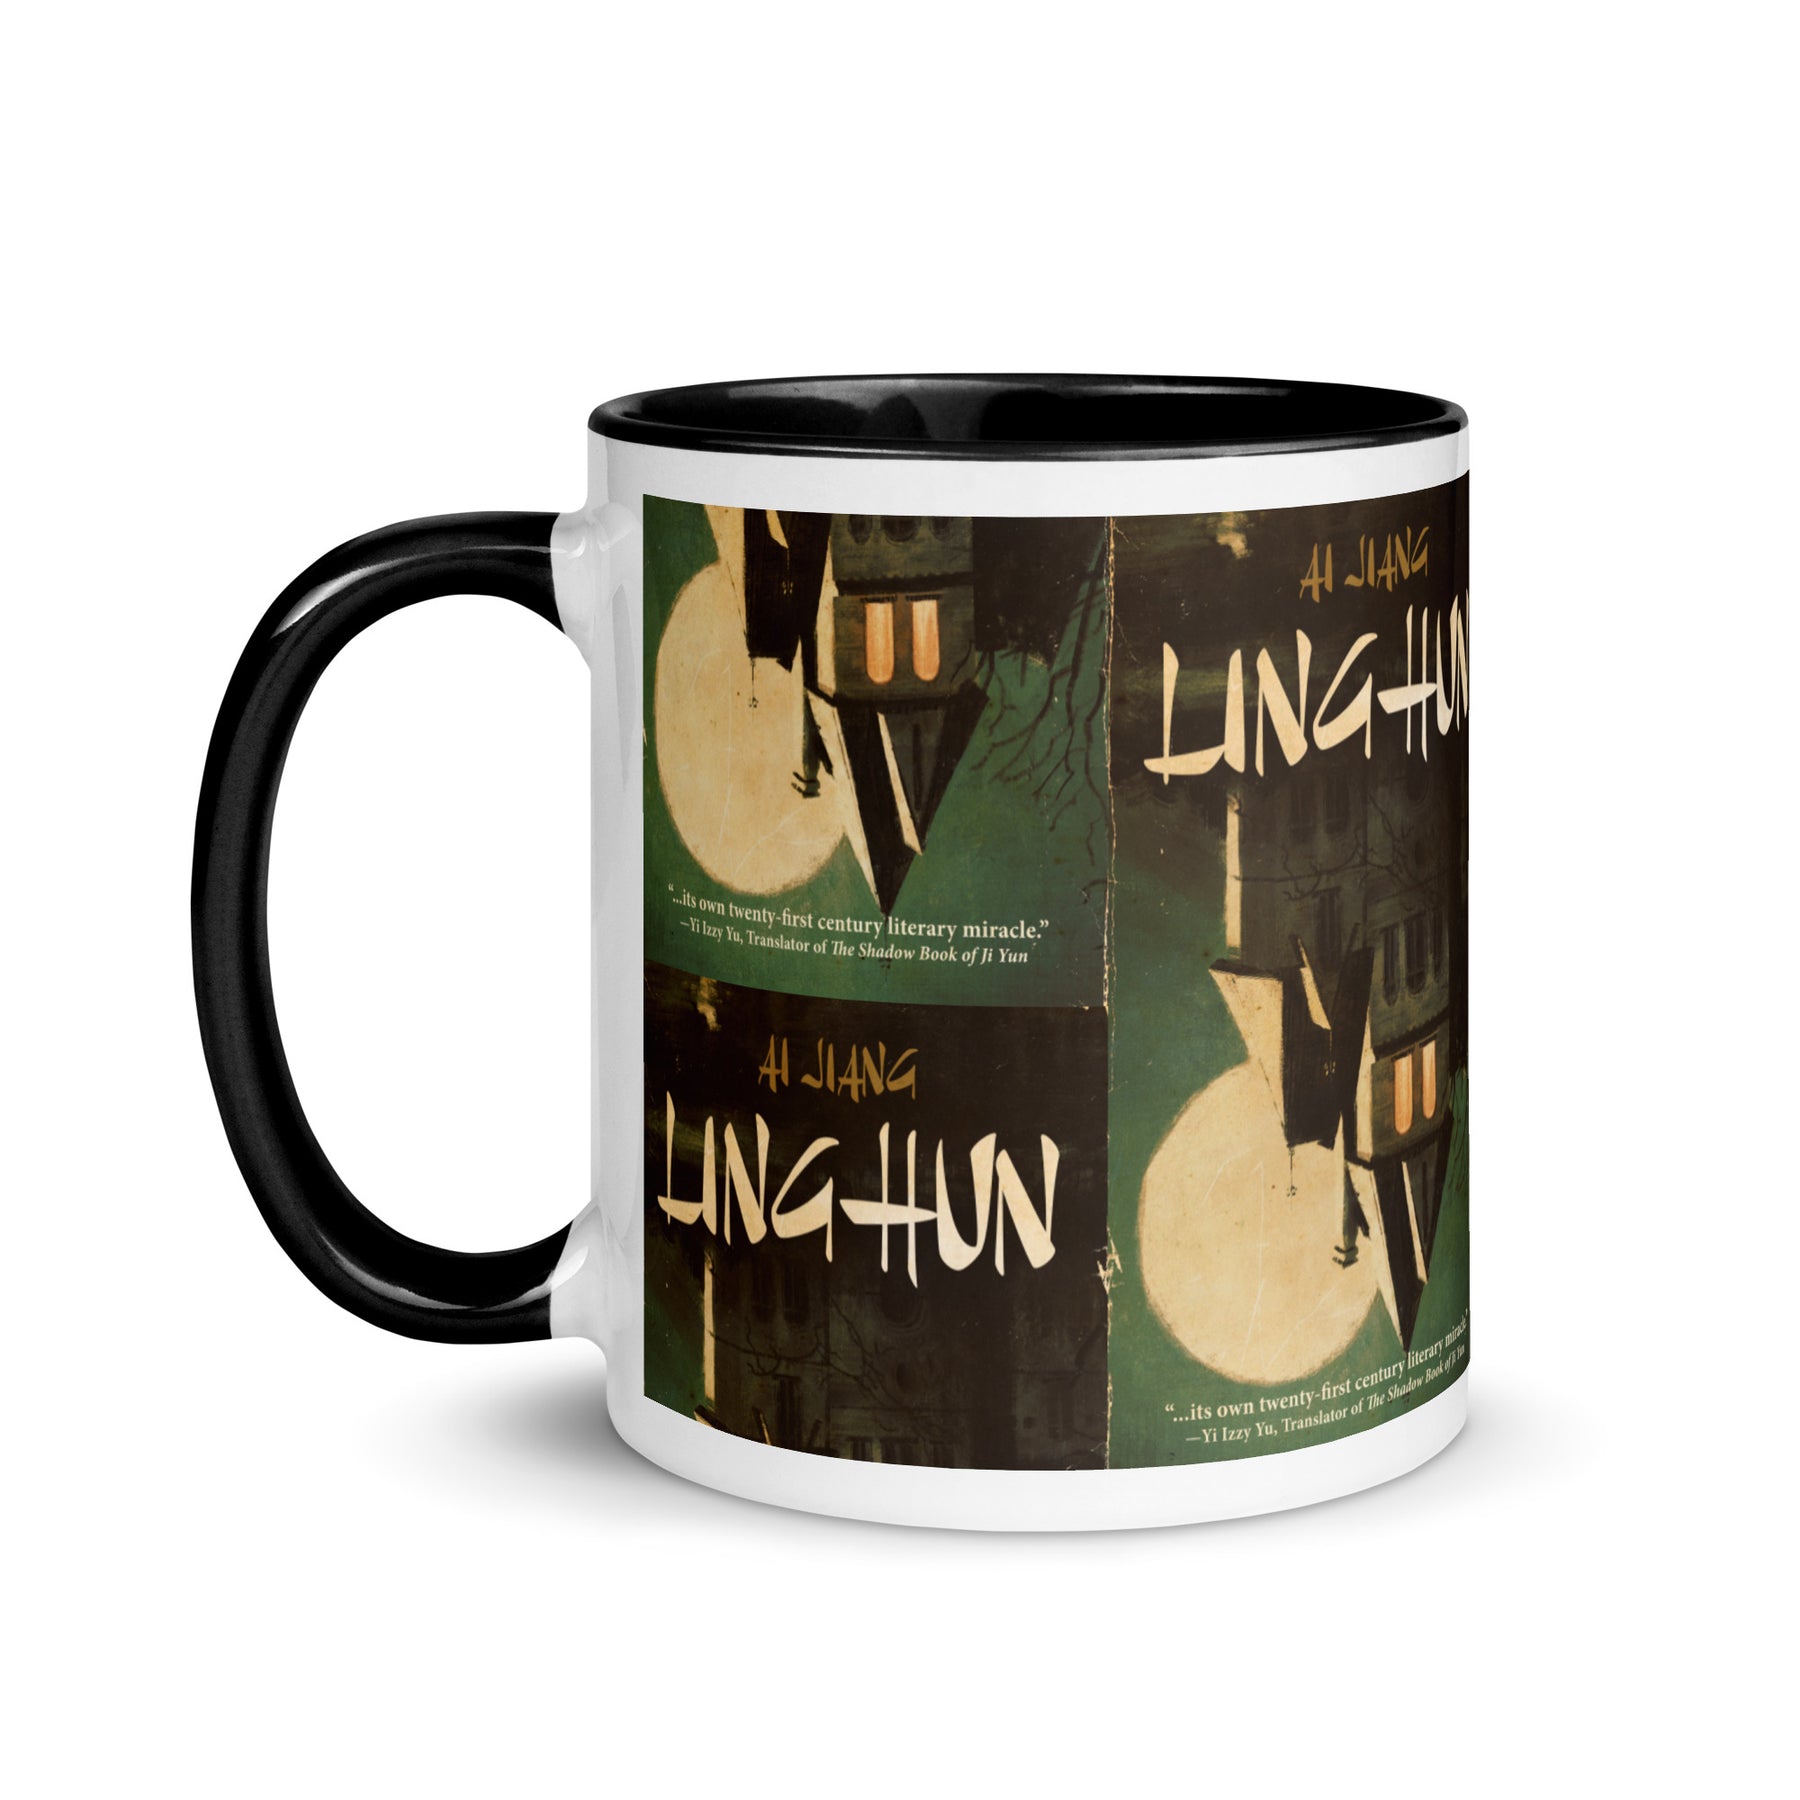 "Linghun" 11oz Mug